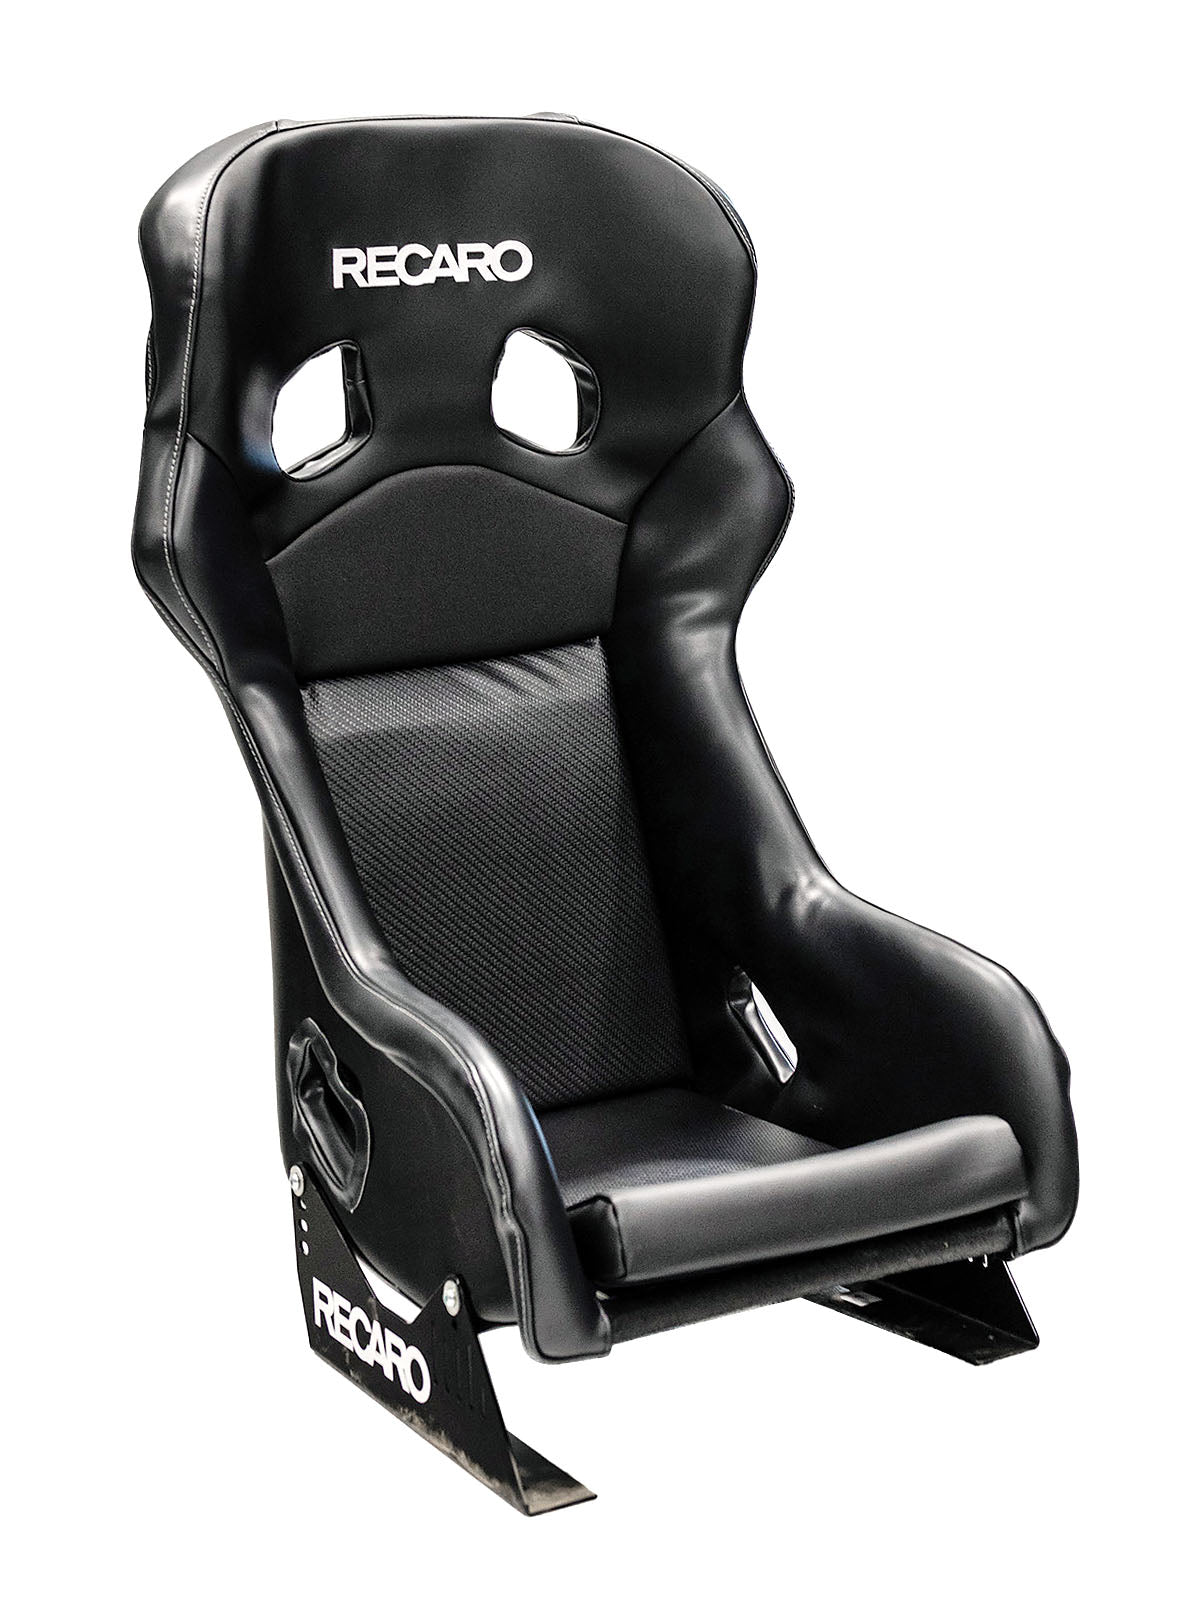 Recaro Pro Racer SPG Ultra ORV Racing Seat